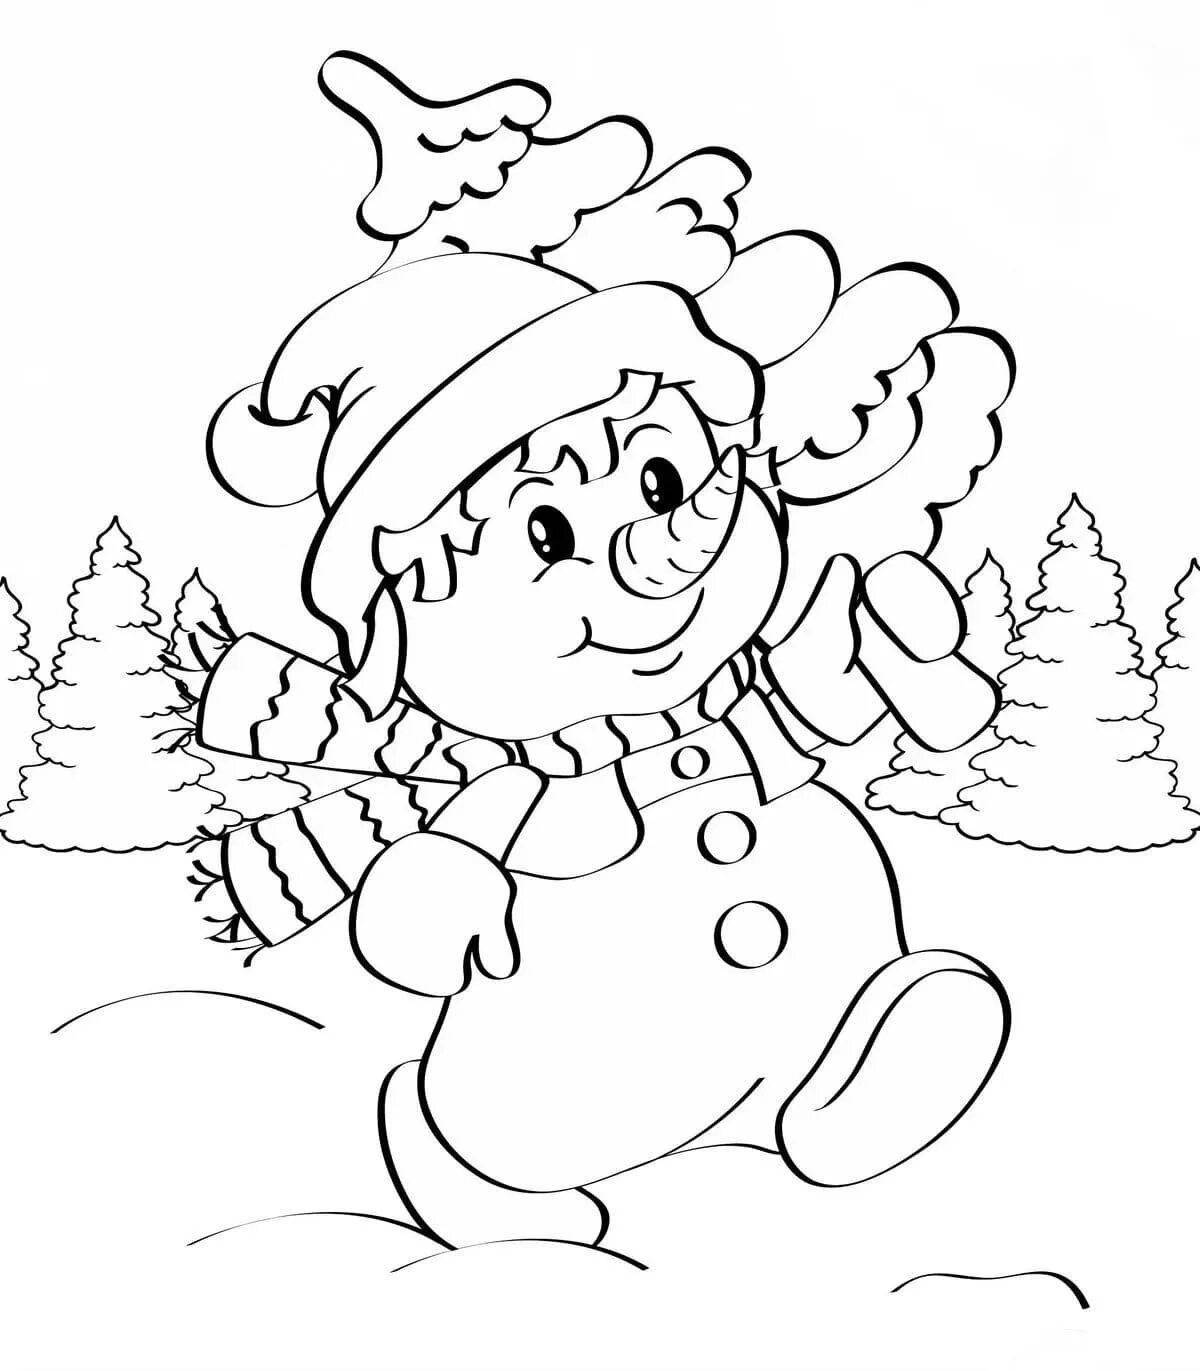 Юмористическая раскраска снеговик для детей 5 лет